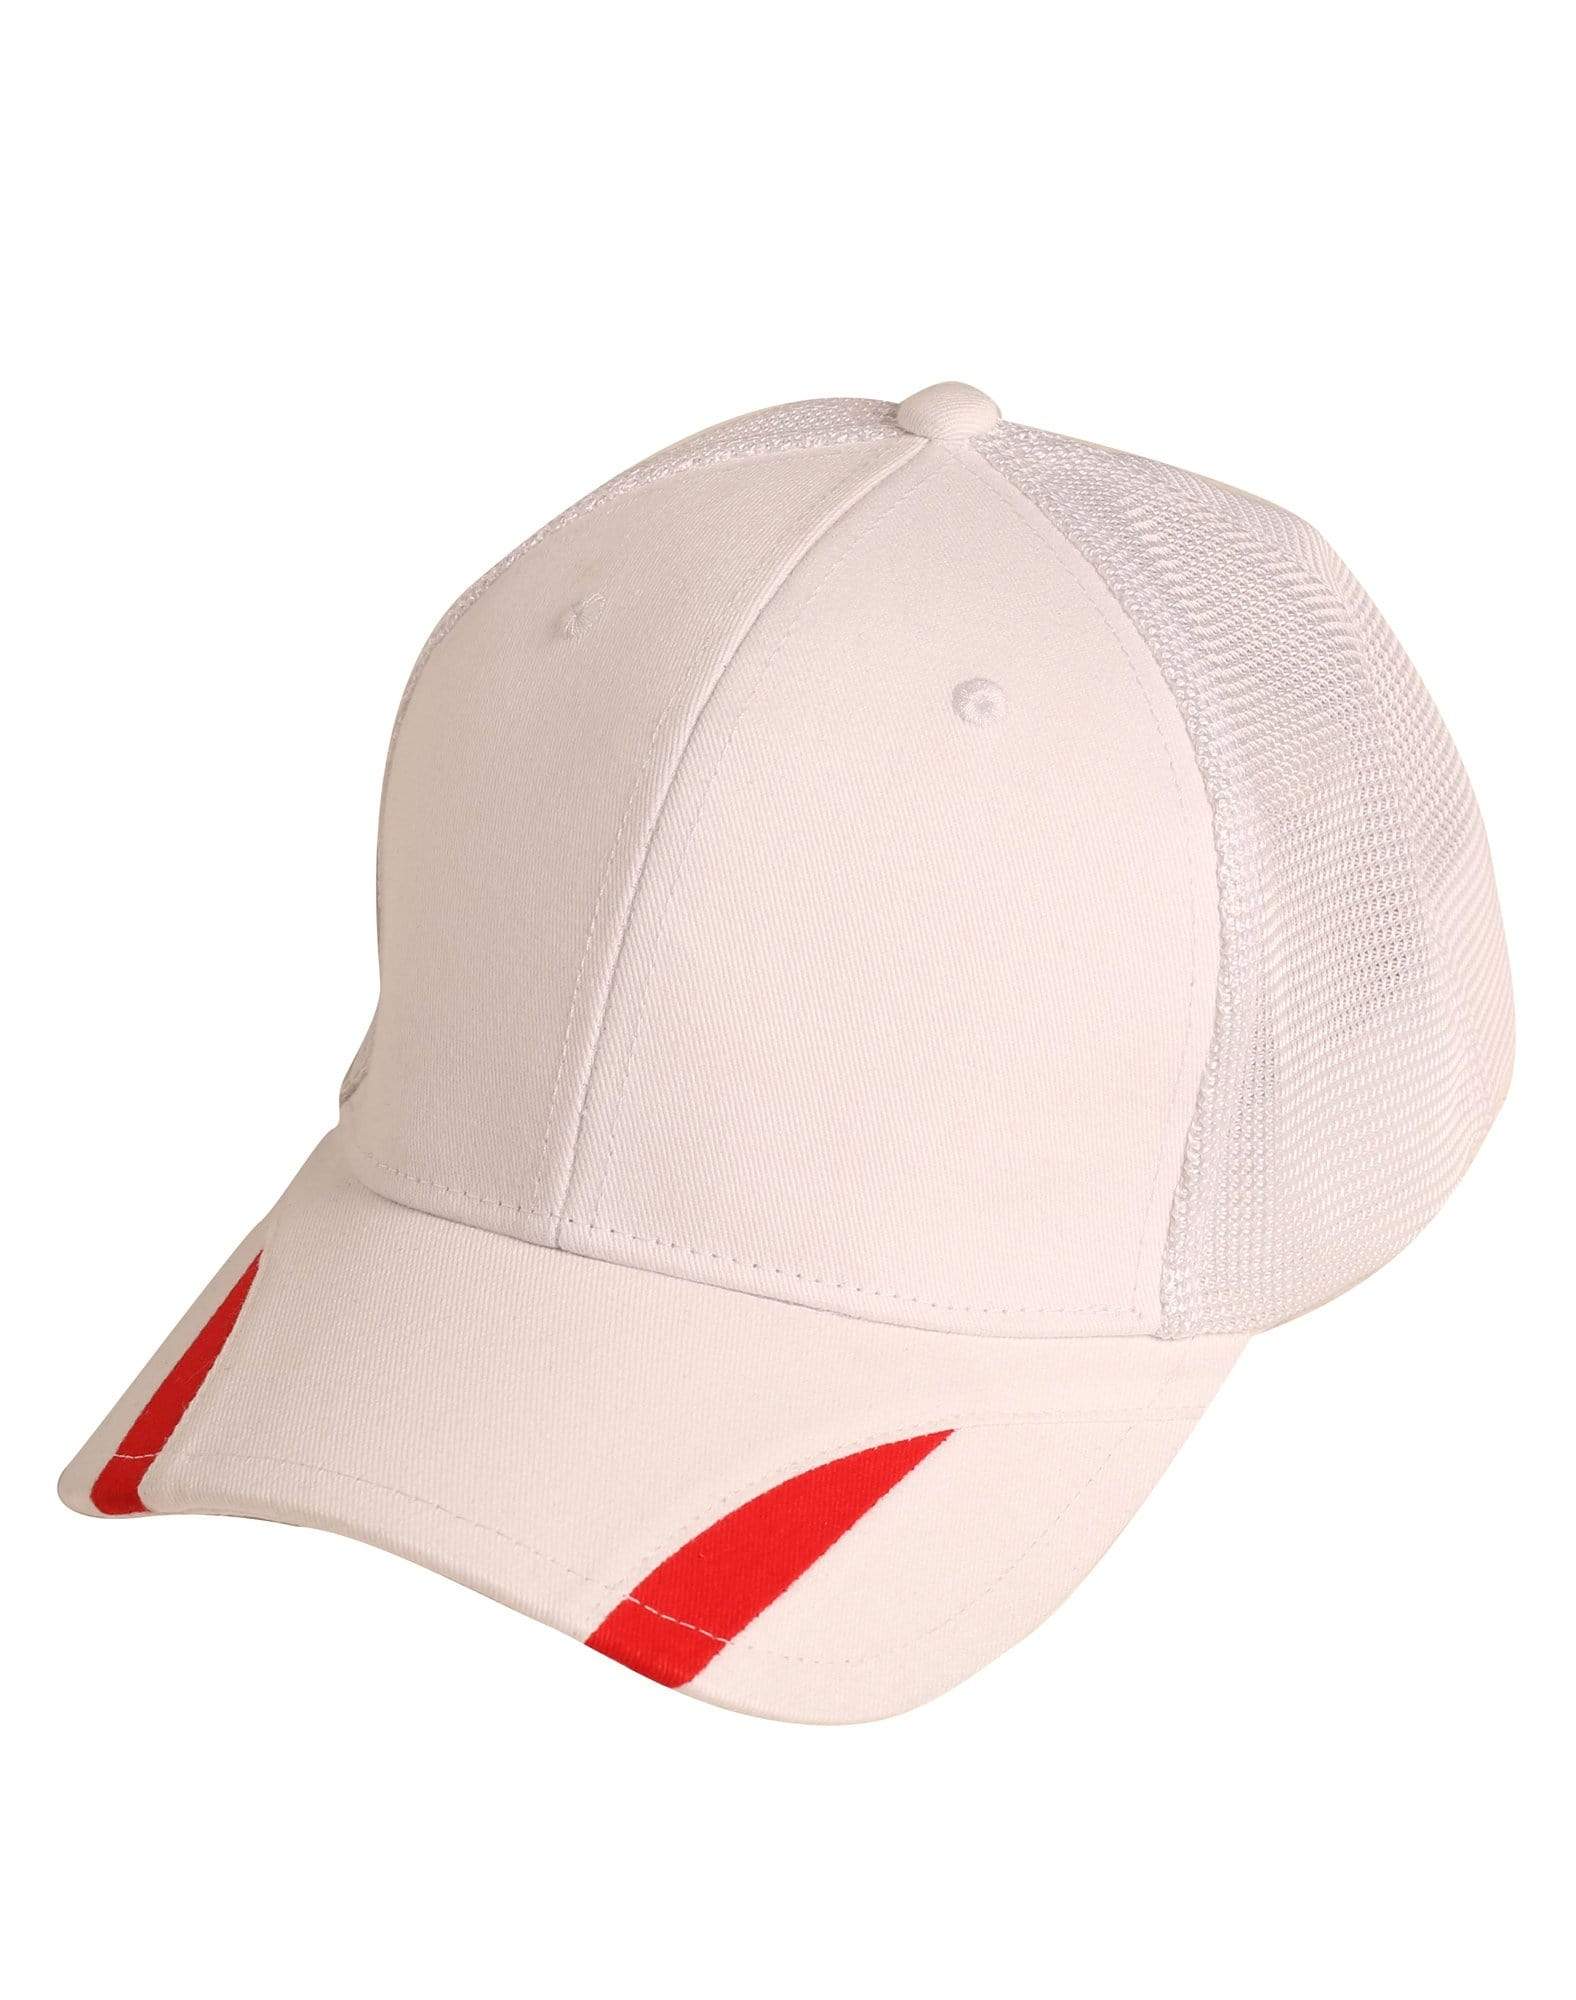 Contrast Peak Trim Cap Ch41 Active Wear Winning Spirit White/Red One size 